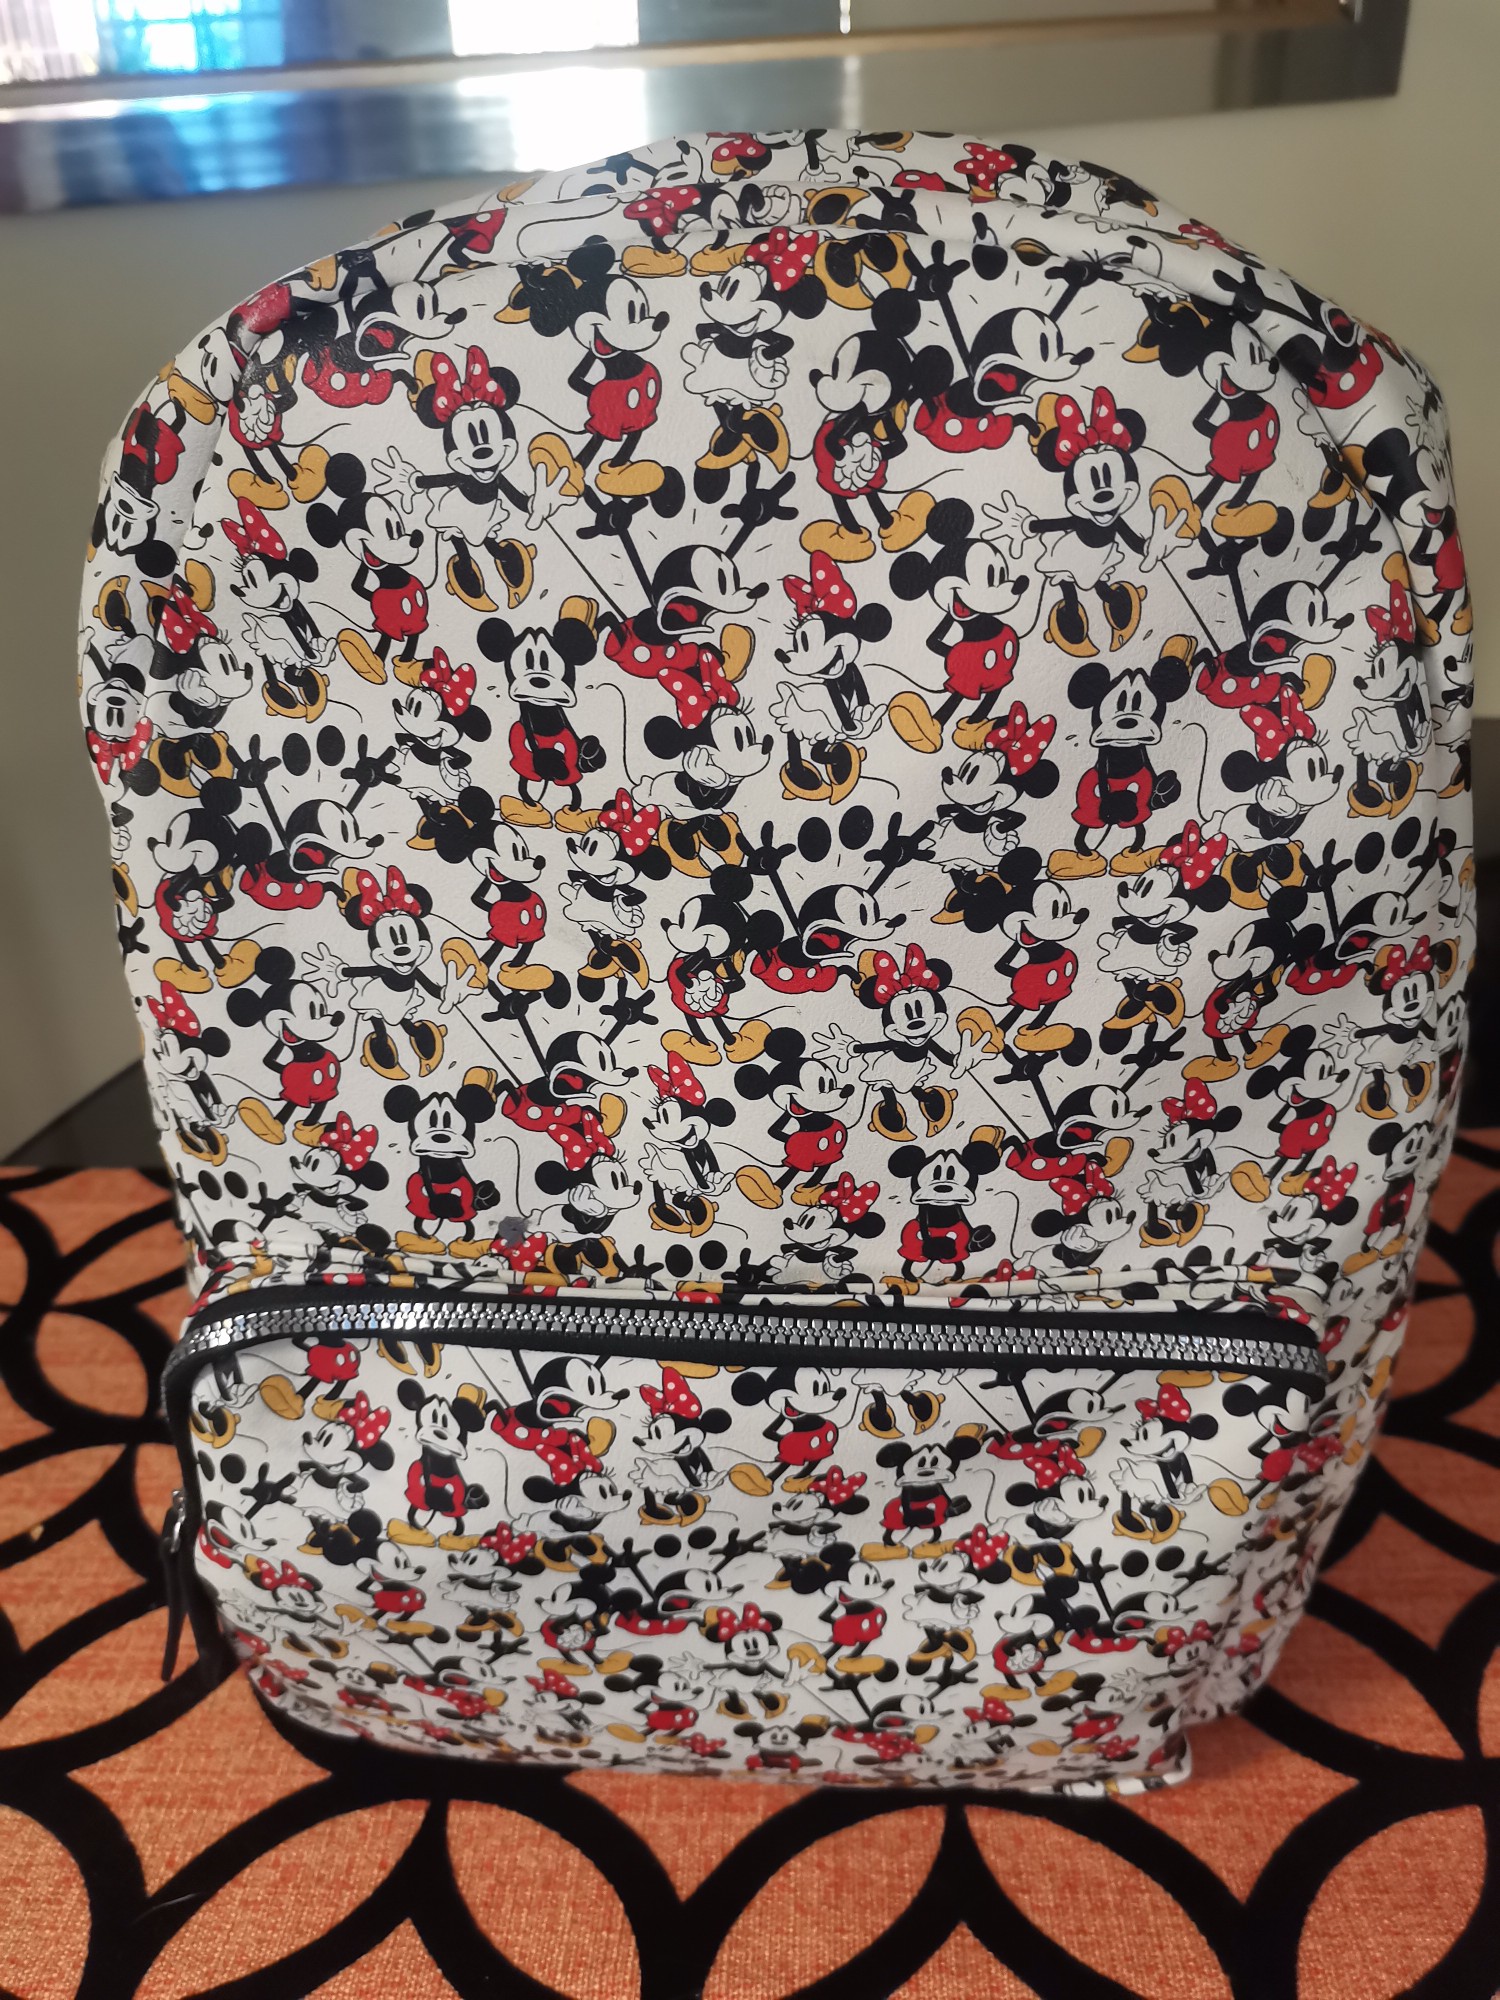 carteras y maletas - Mochila de Mickey Mouse 2